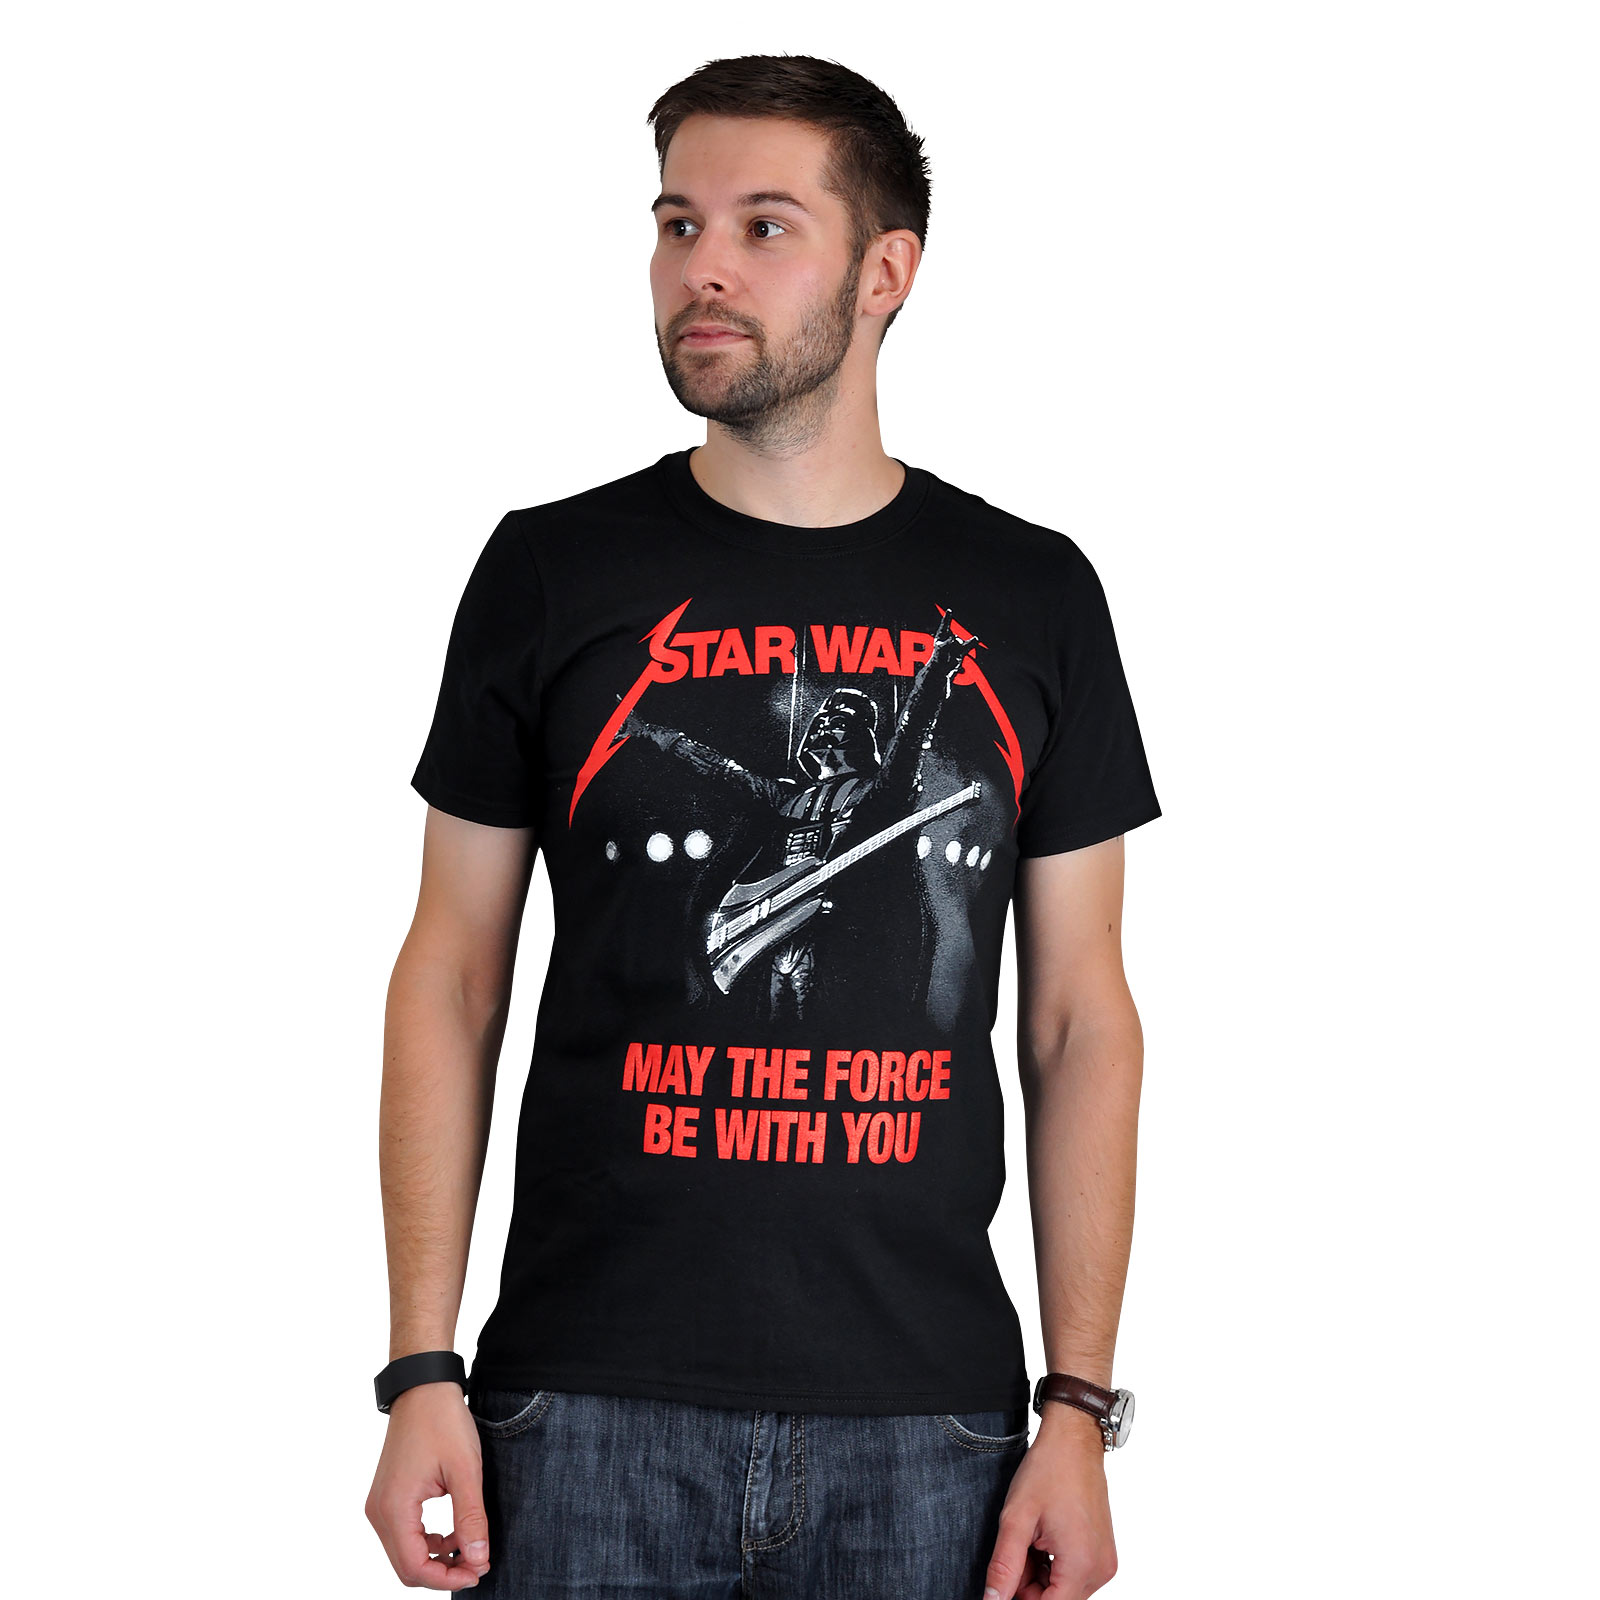 Star Wars - T-shirt Metal Wars